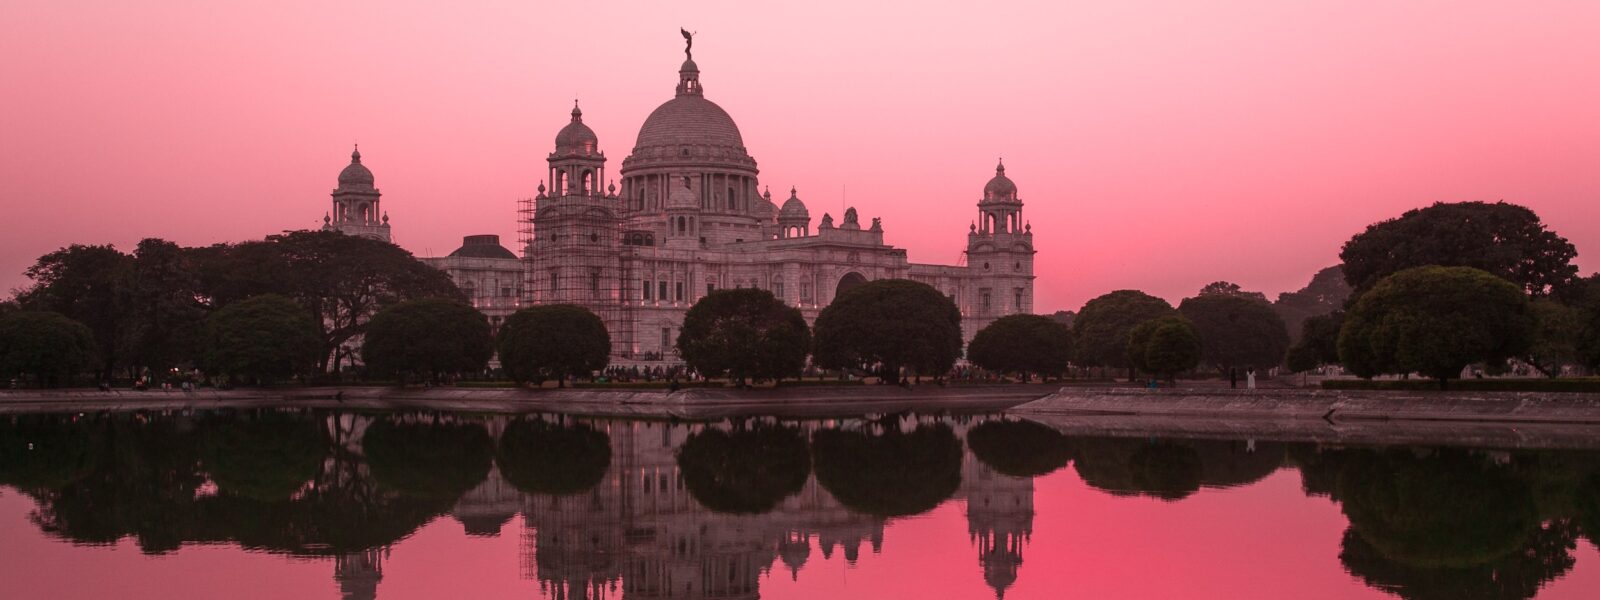 Victoria Memorial in Pink